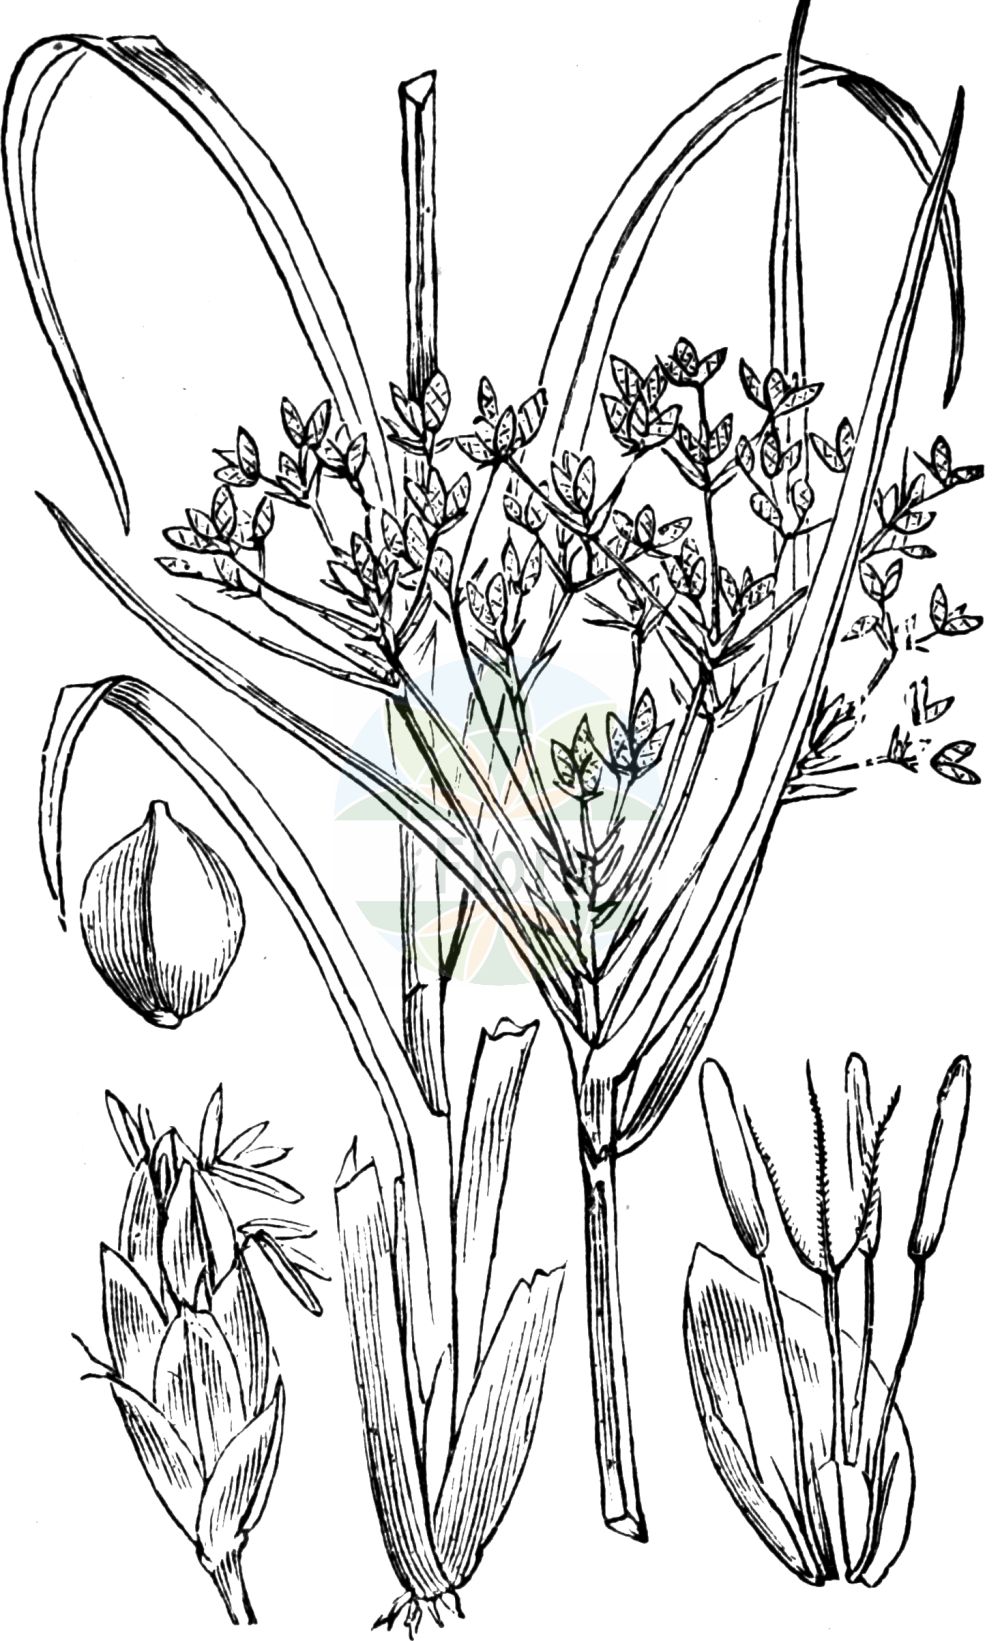 Historische Abbildung von Scirpus sylvaticus (Wald-Simse - Wood Club-rush). Das Bild zeigt Blatt, Bluete, Frucht und Same. ---- Historical Drawing of Scirpus sylvaticus (Wald-Simse - Wood Club-rush). The image is showing leaf, flower, fruit and seed.(Scirpus sylvaticus,Wald-Simse,Wood Club-rush,Scirpus sylvaticus,Wald-Simse,Wood Club-rush,Scirpus,Simse,Club-rush,Cyperaceae,Sauergräser,Sedge family,Blatt,Bluete,Frucht,Same,leaf,flower,fruit,seed,Fitch et al. (1880))